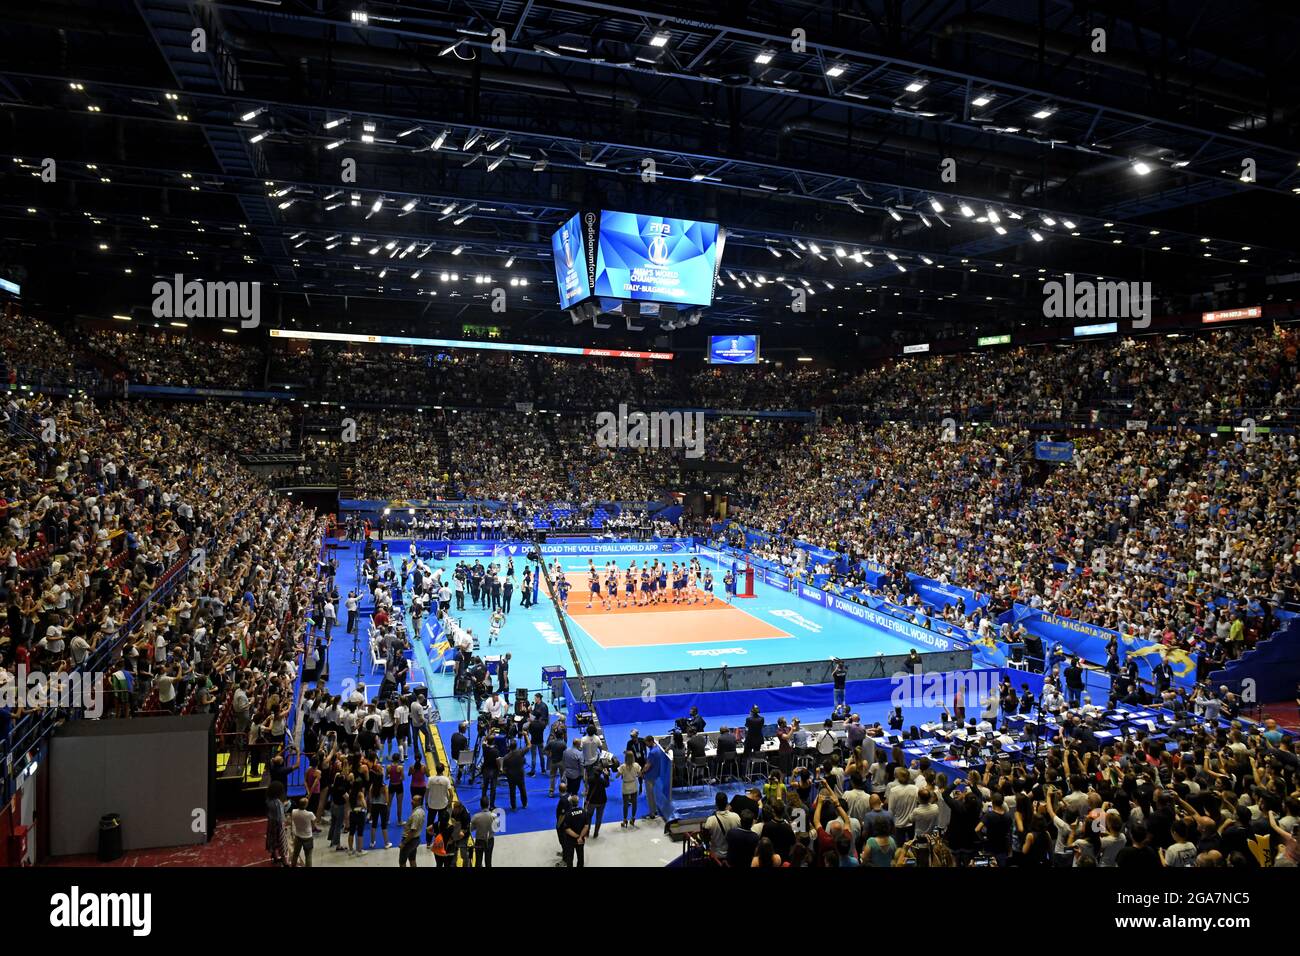 Vista panoramica sul campo da pallavolo al coperto durante la Volley Nations League, a Milano. Foto Stock